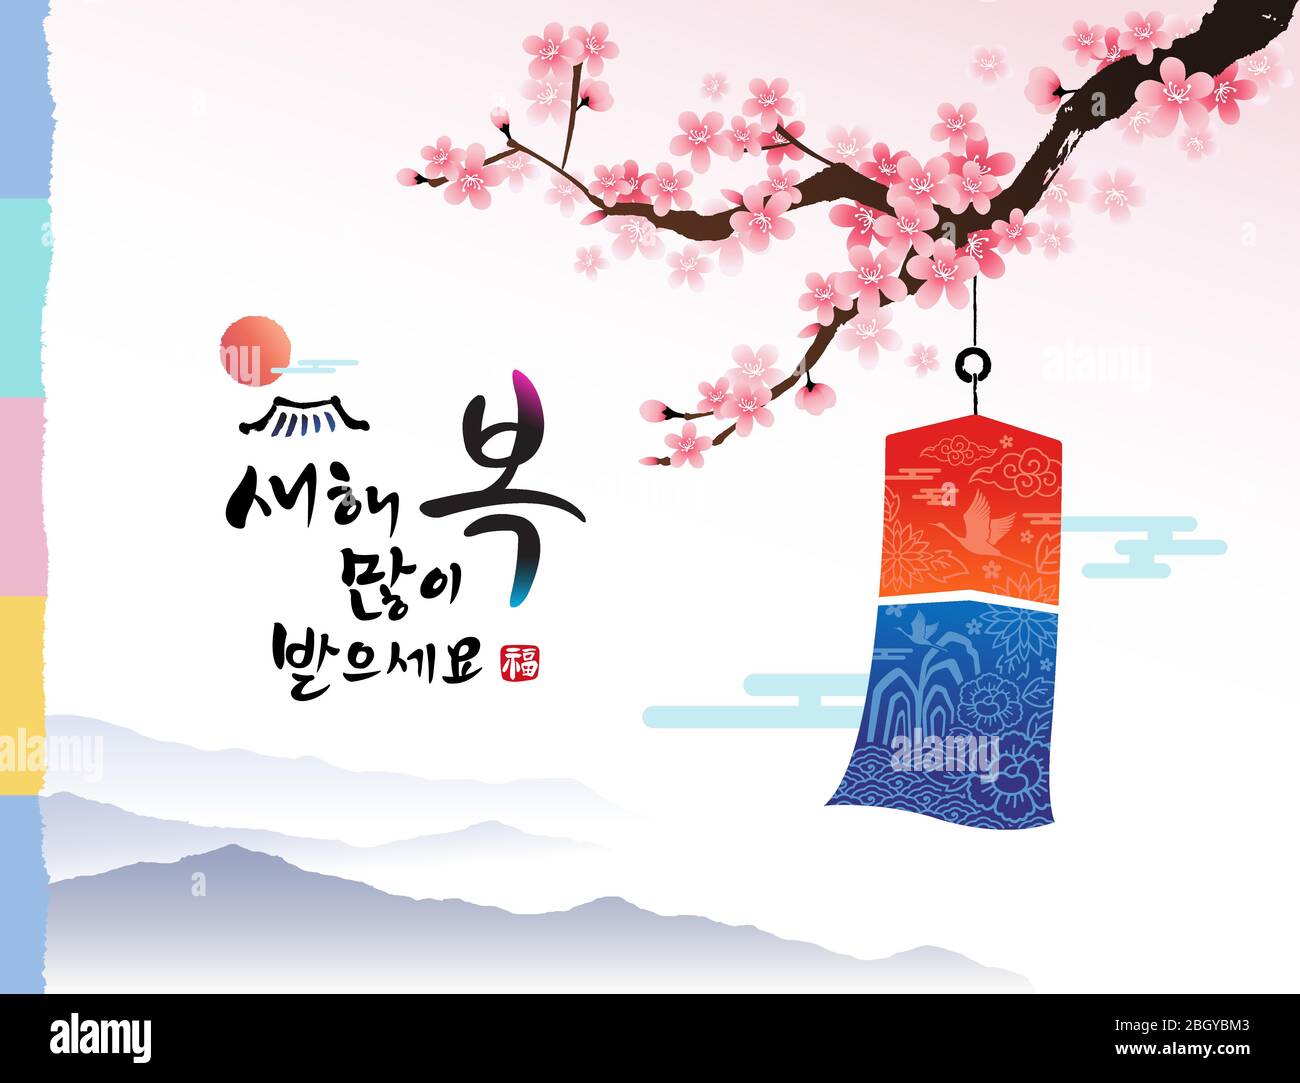 Frohes neues Jahr, Übersetzen Koreanisch Text: Frohes neues Jahr. Kalligraphie und traditionelle koreanische rentalton und Pflaumenblume. Stock Vektor